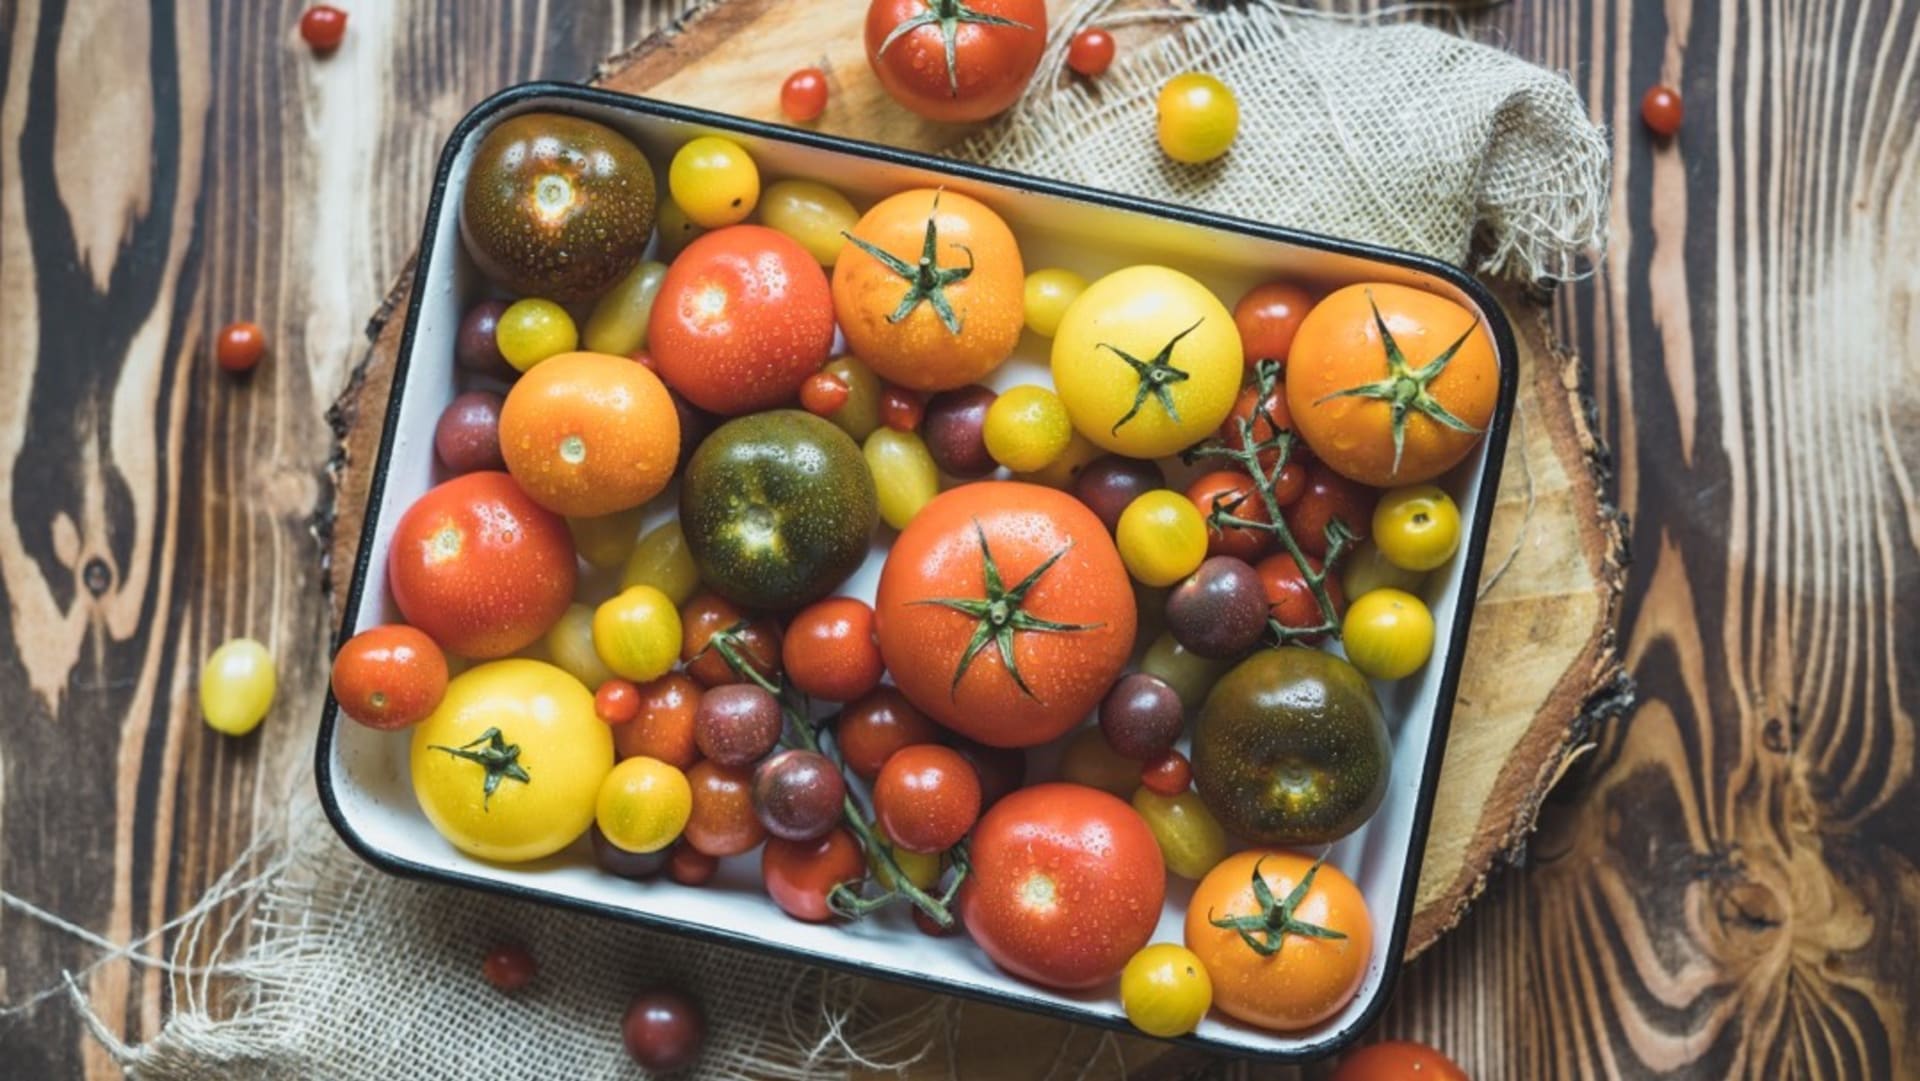 Šťavnatá a voňavá rajčata: Čechy milovaná zelenina